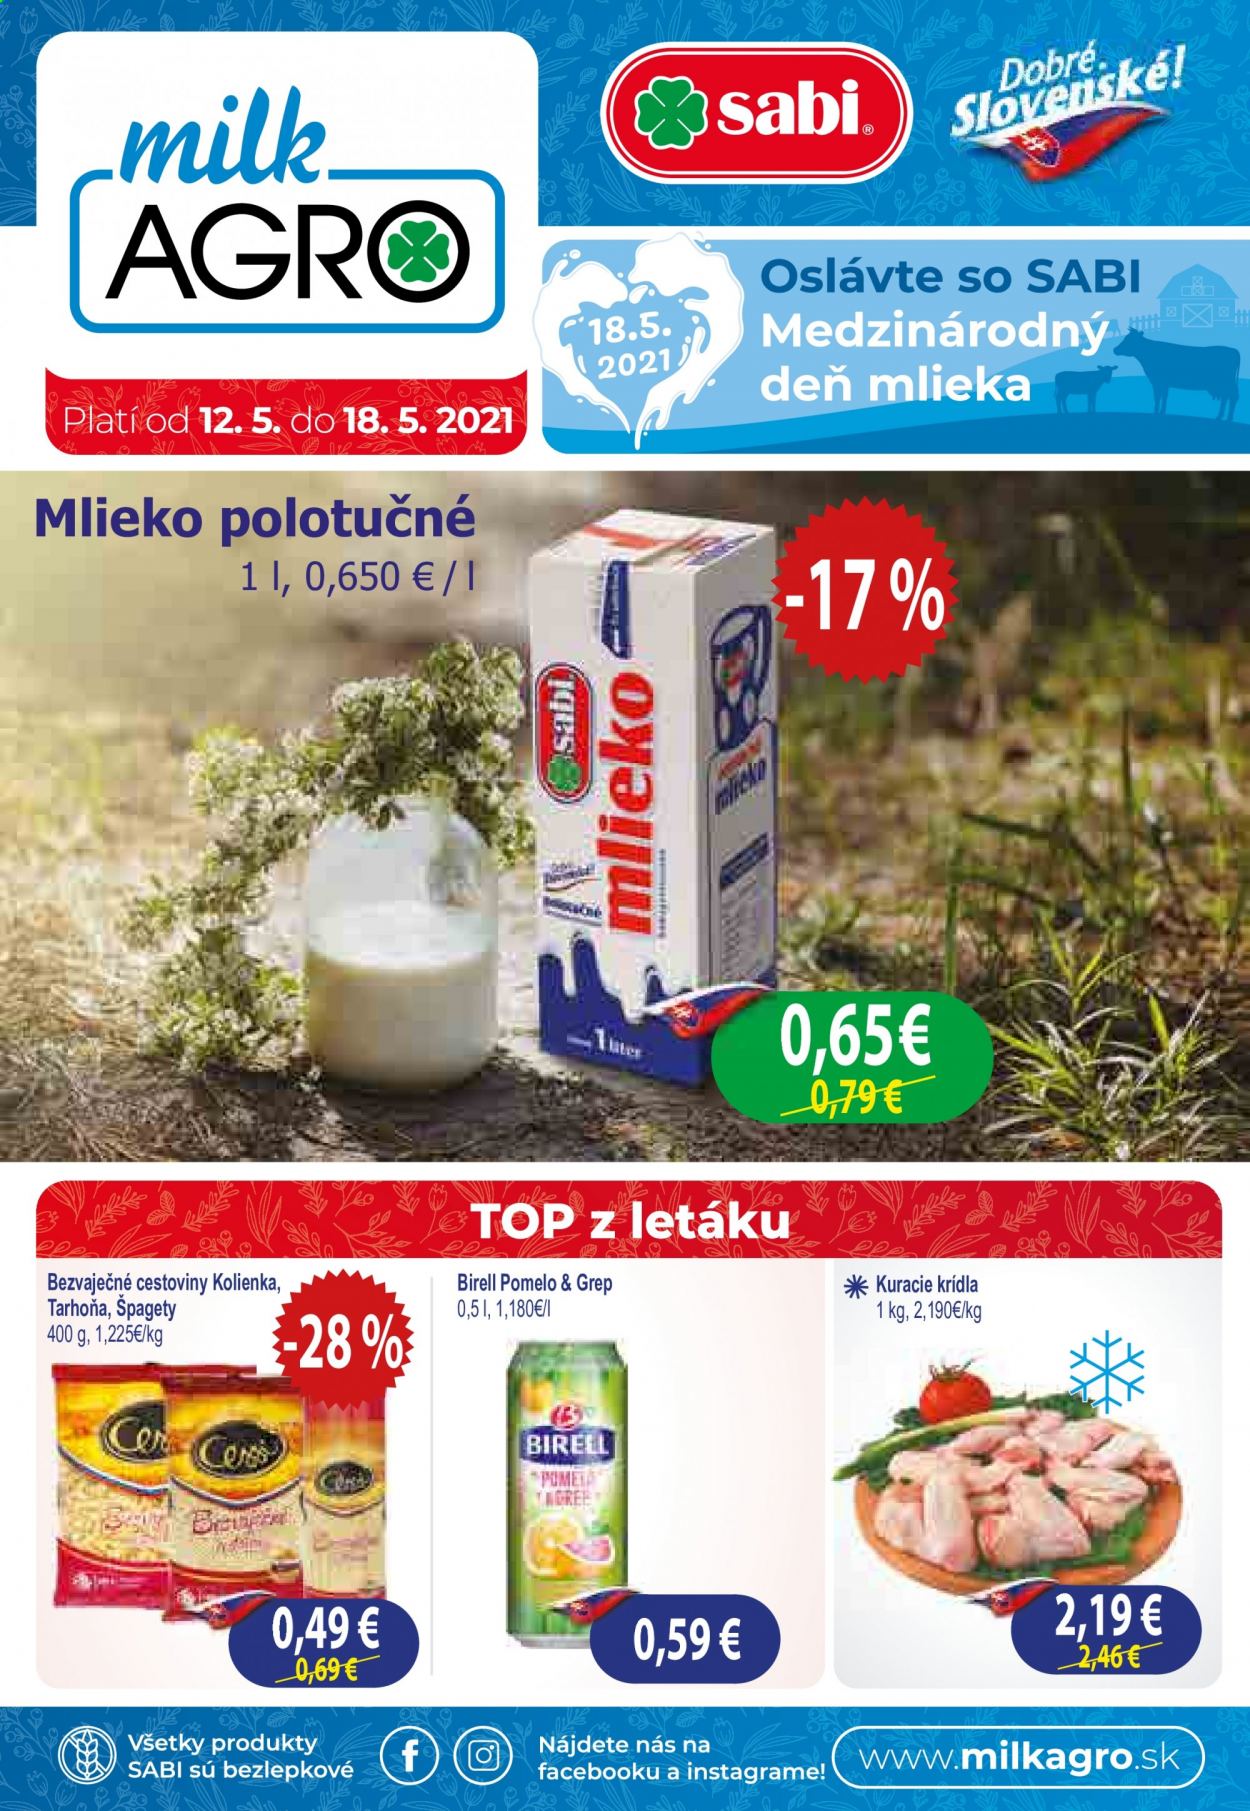 thumbnail - Leták Milk AGRO - 12.5.2021 - 18.5.2021 - Produkty v akcii - mlieko, polotučné mlieko, bezvaječné cestoviny, cestoviny, špagety, Birell, pivo, kuracie krídla, kuracie mäso. Strana 1.